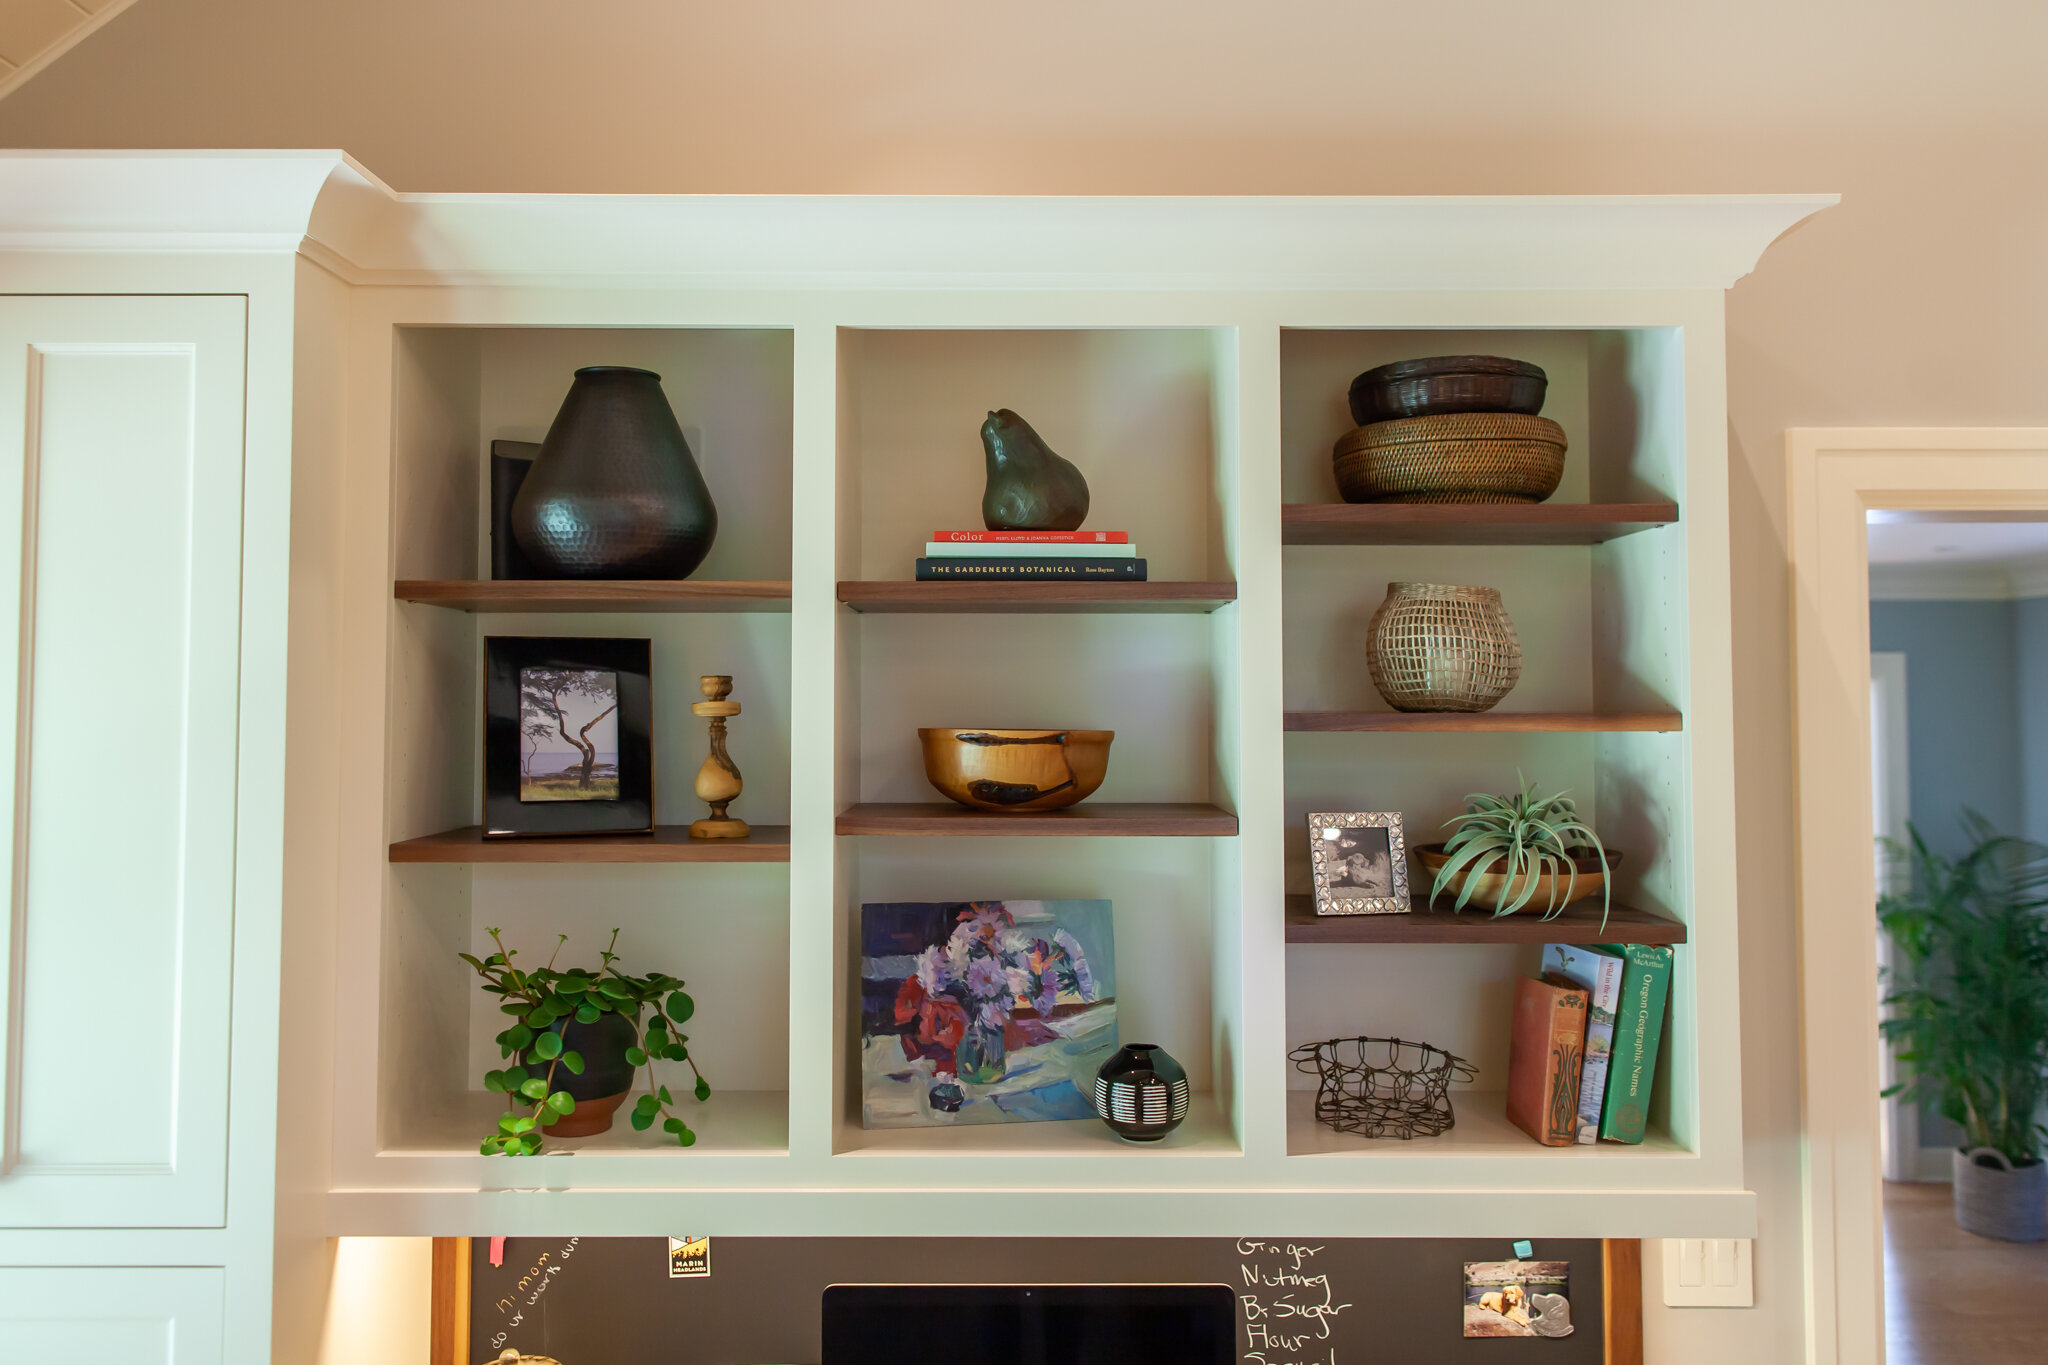 Shelves for family memorabilia.